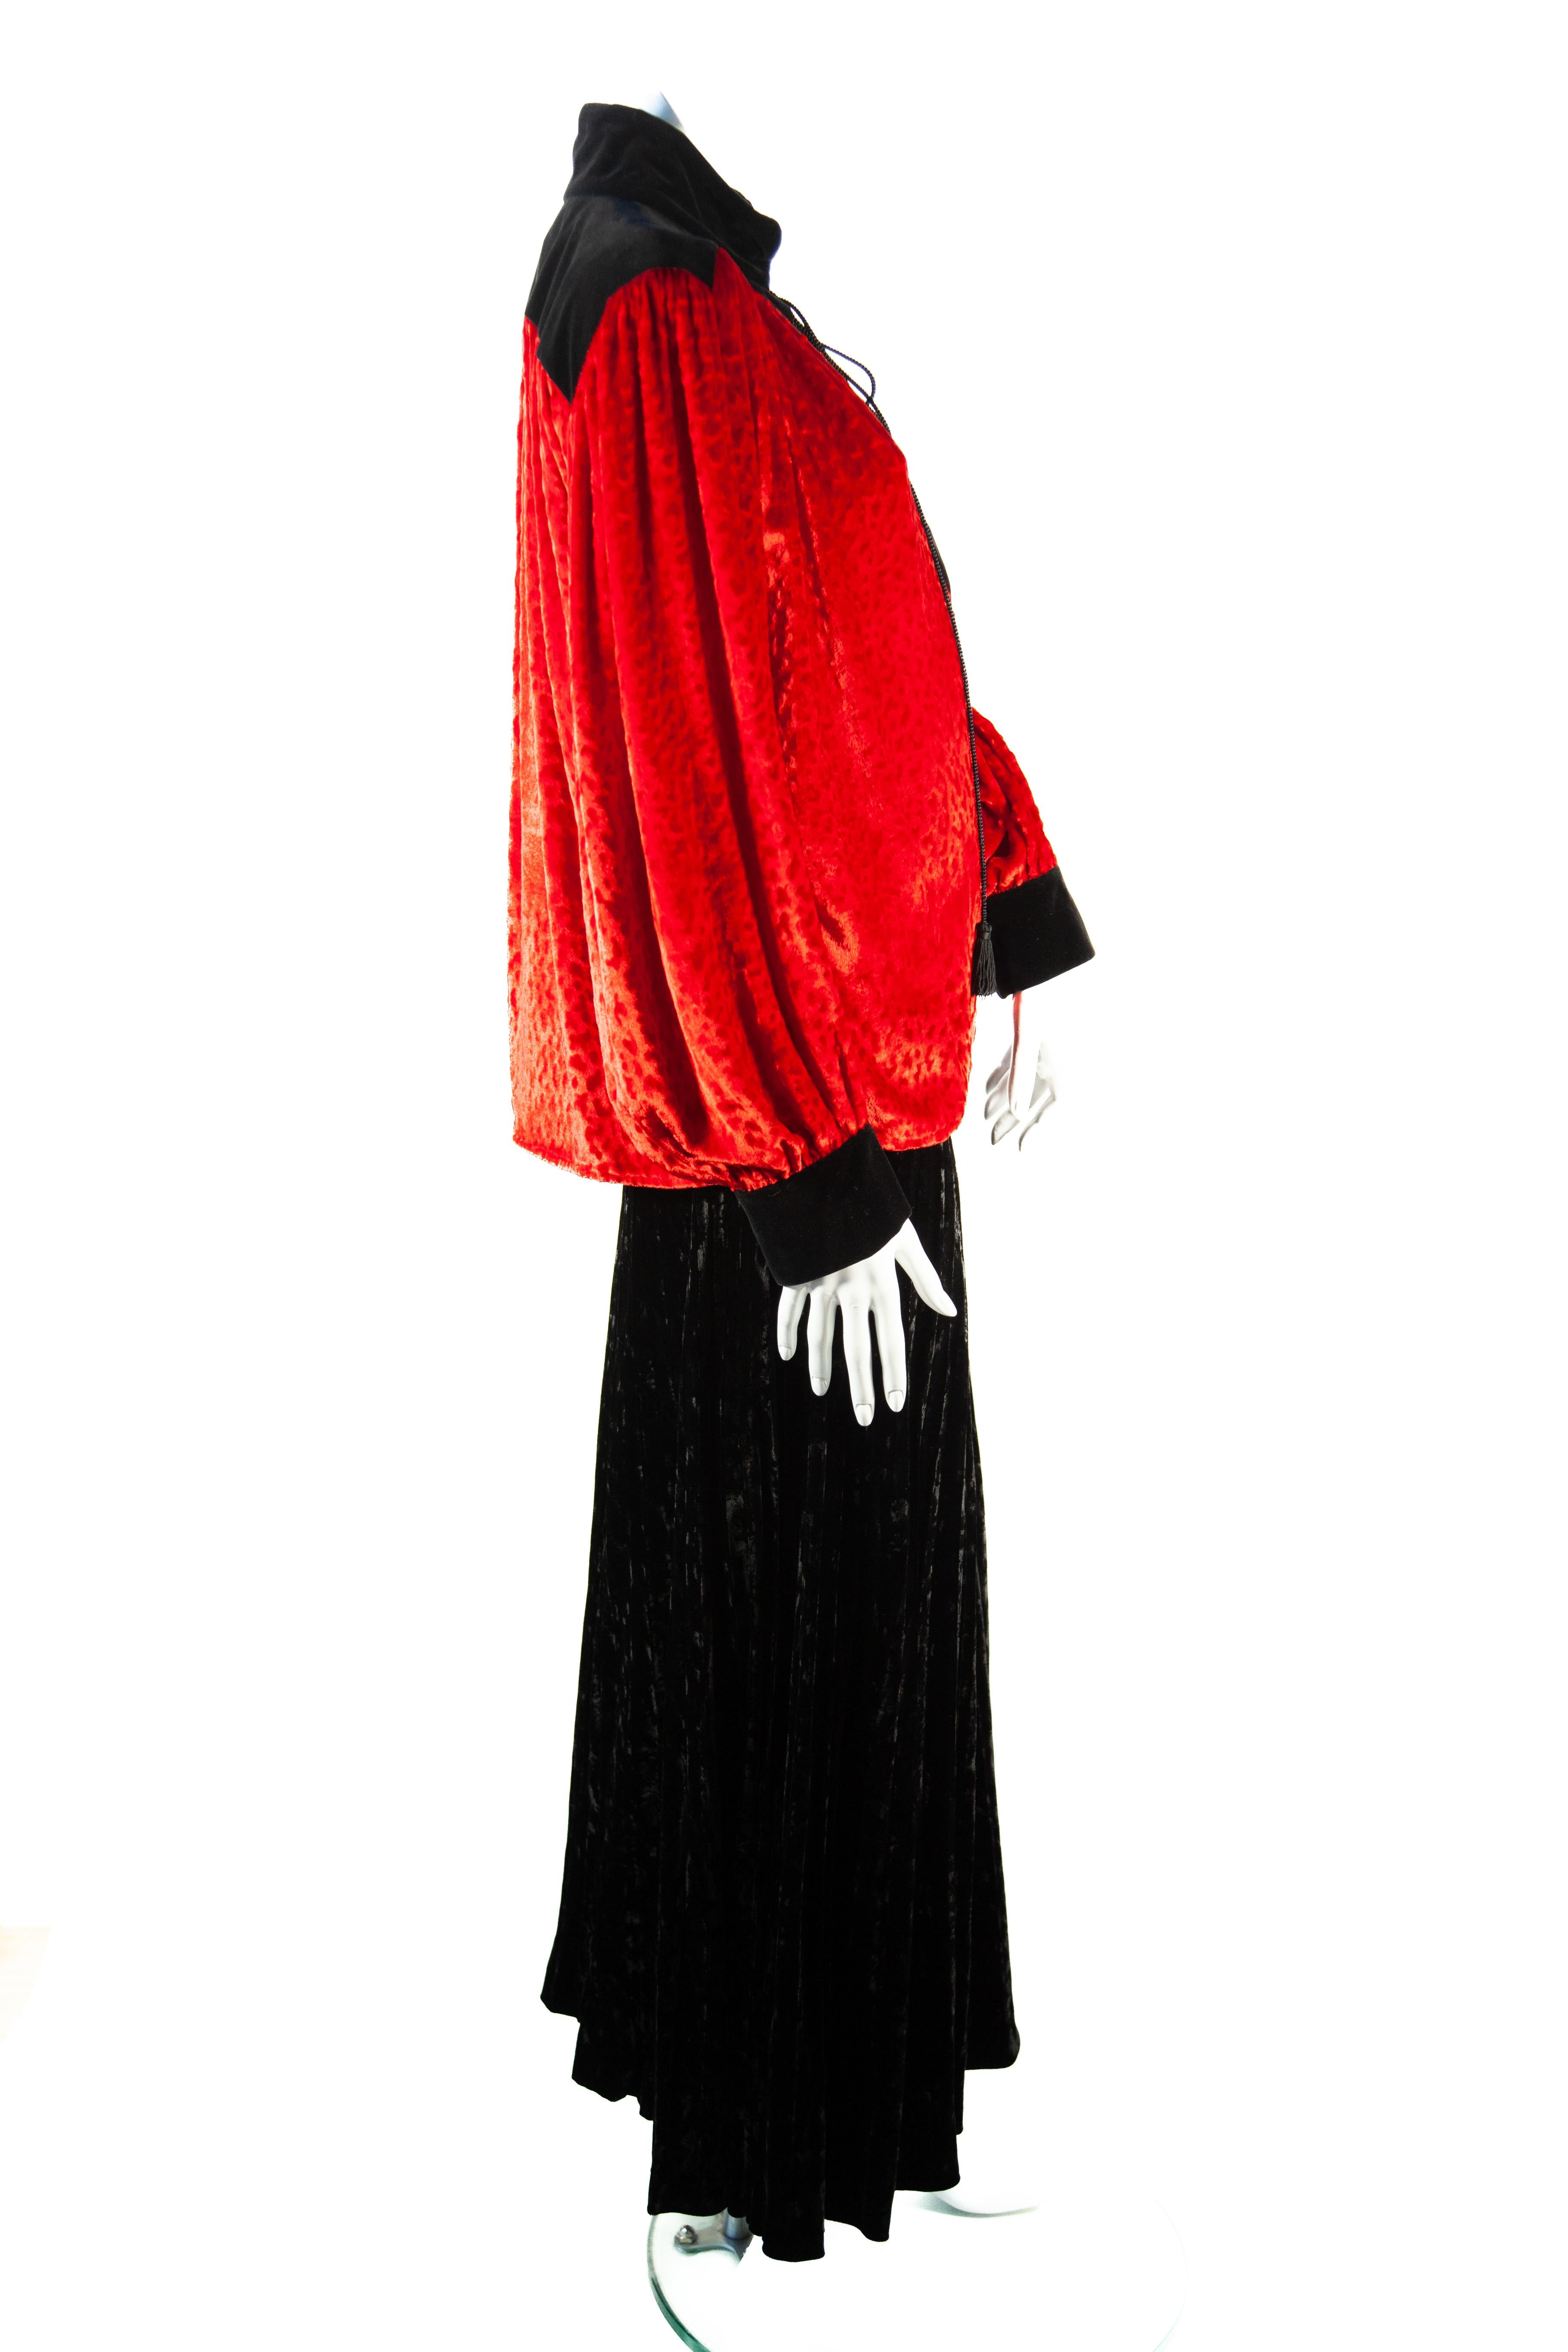 Women's Yves Saint Laurent Rive Gauche Red Velvet Top with Tassels For Sale